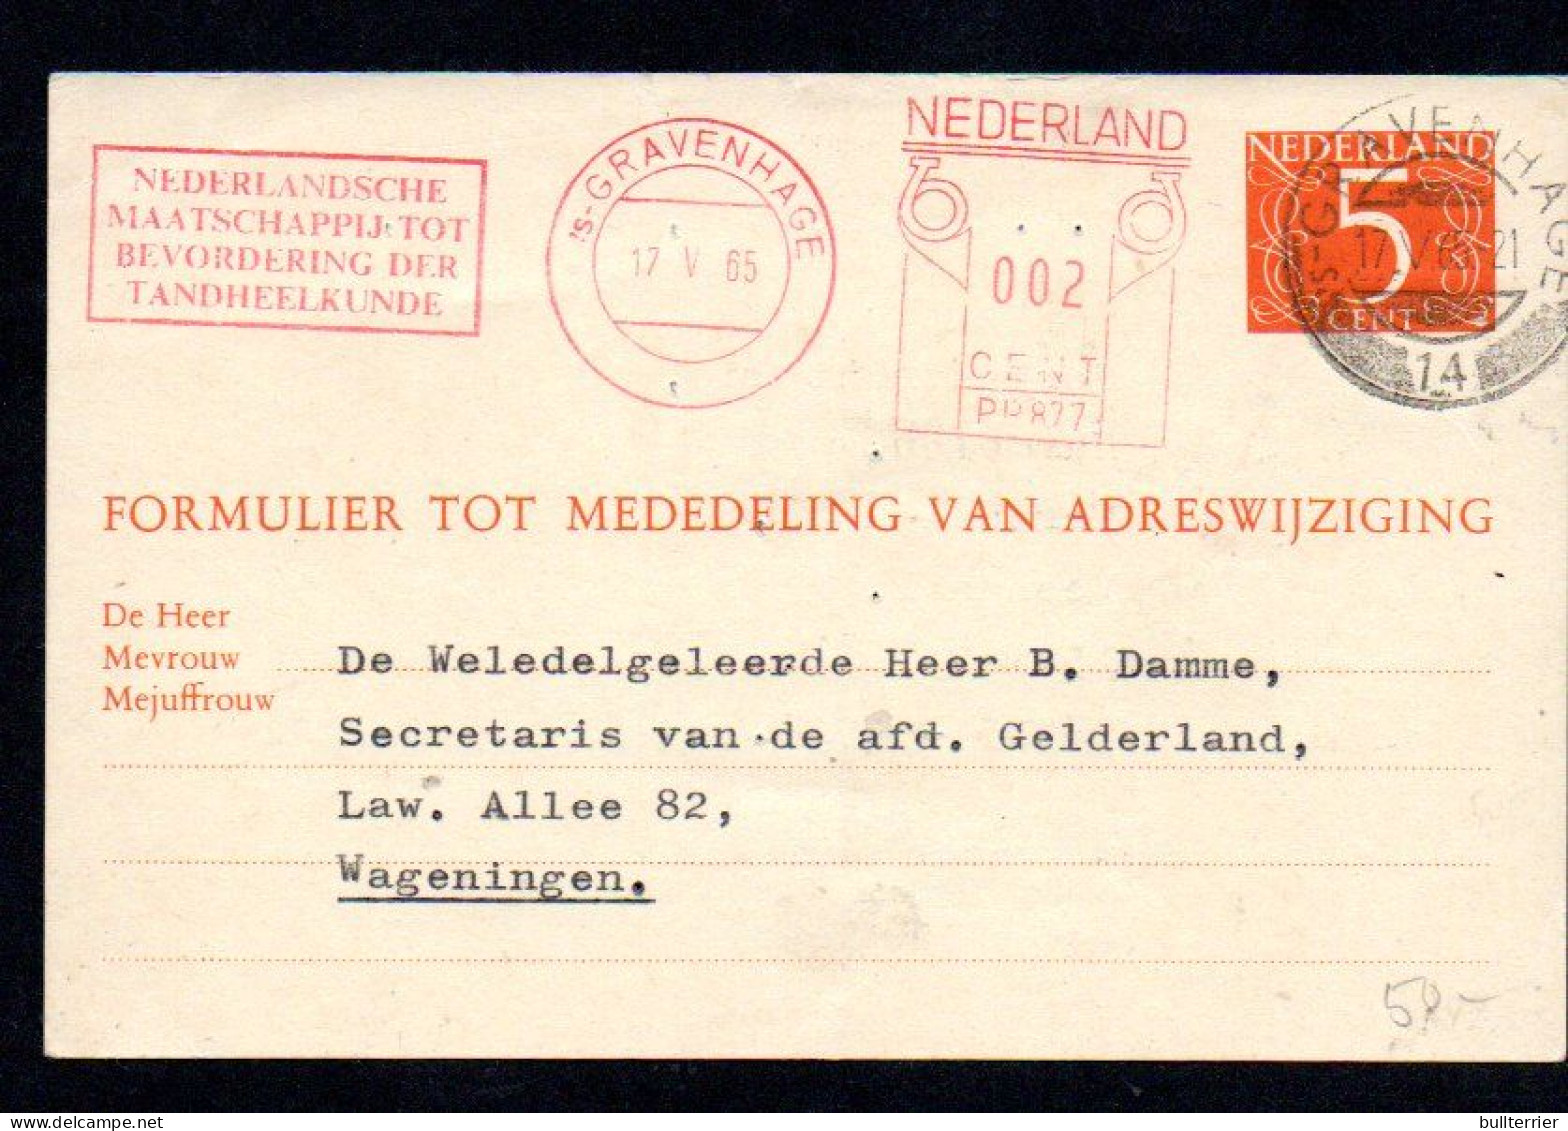 DENISTRY -  NETHERLANDS - 1965- DENTAL COVER WAGENINGE WITH SLOGAN POSTMARK - Médecine